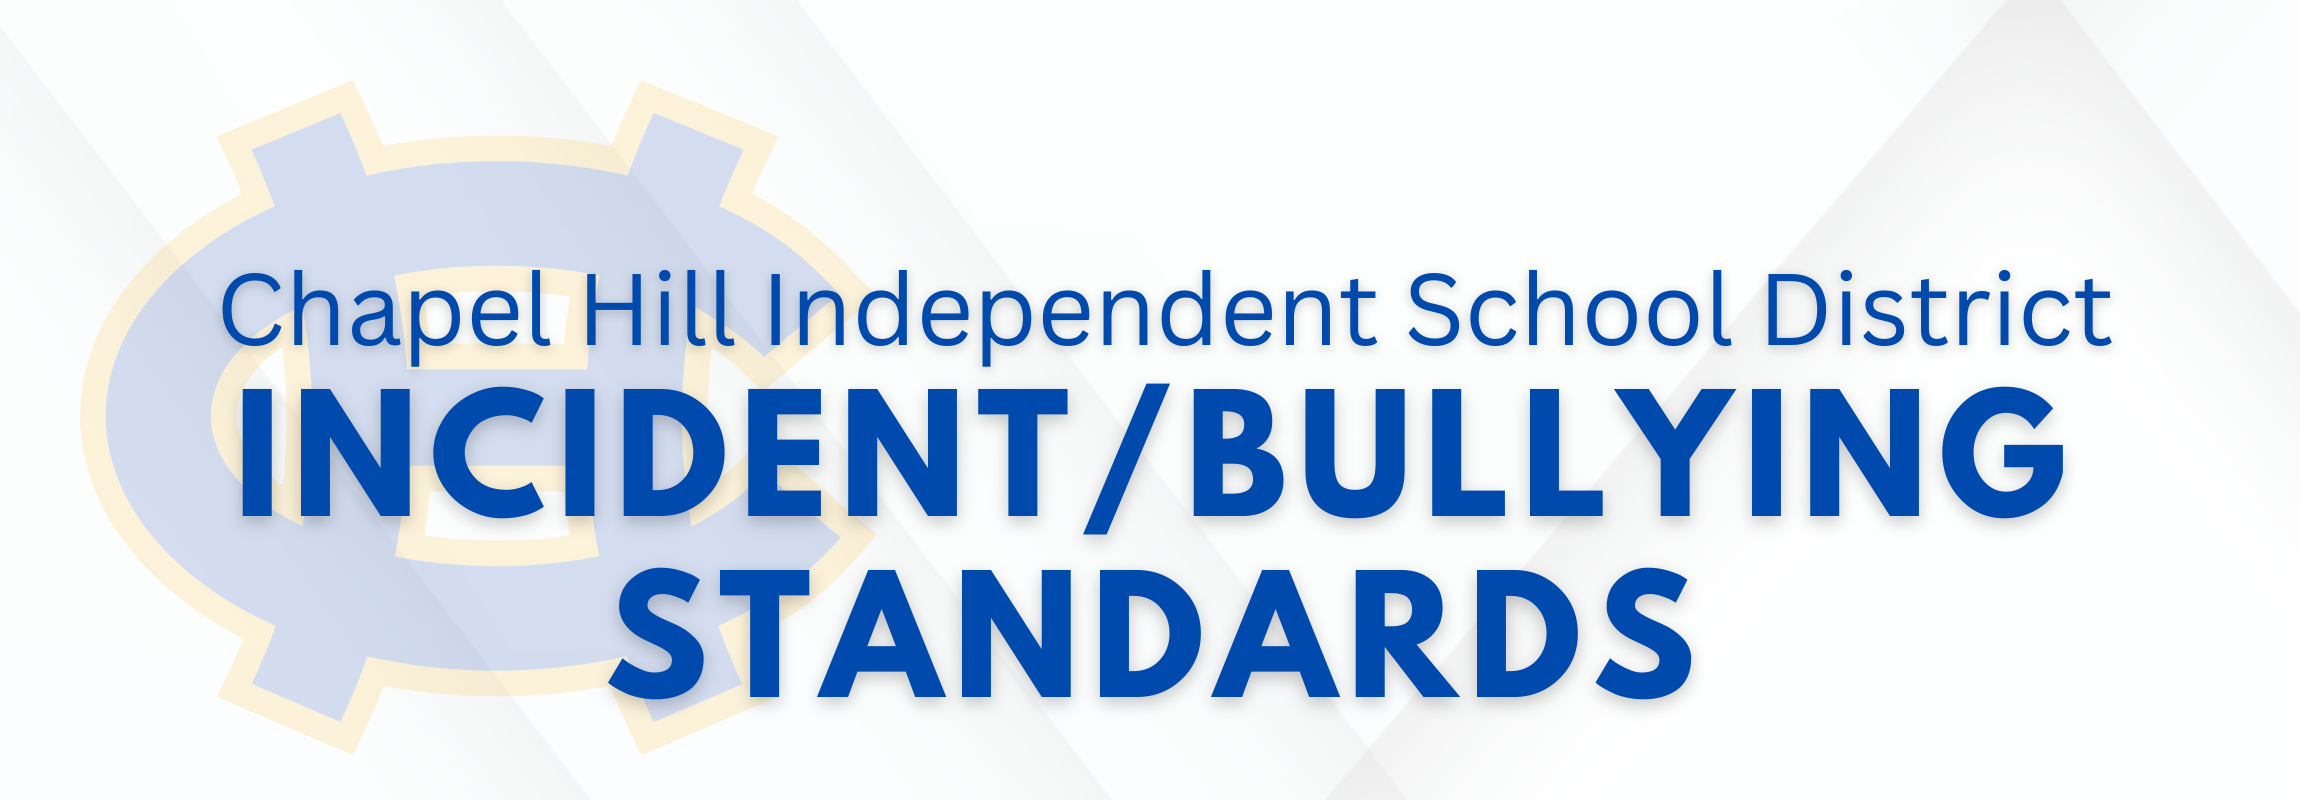 Bullying Standards Logo